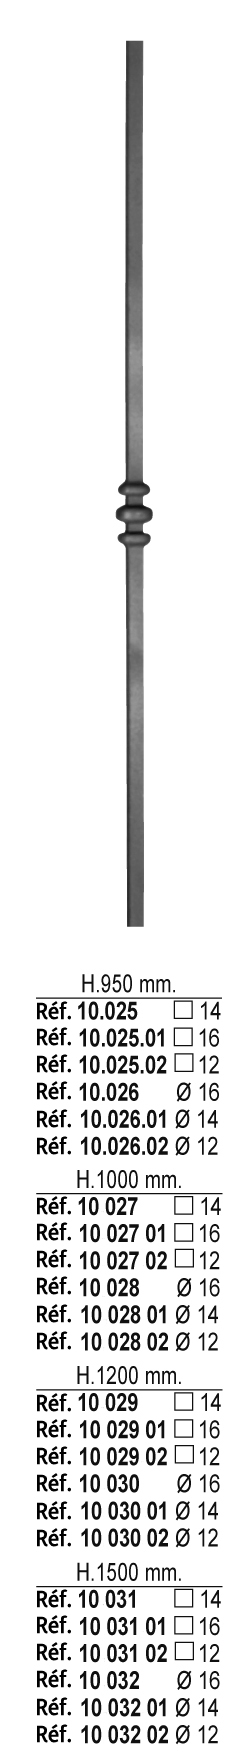 Barreau à souder en fer forgé à chaud. Section ronde de ø12mm de diamètre et 950mm de hauteur. En acier lisse. Composé d'un motif central. Différentes hauteurs au choix.